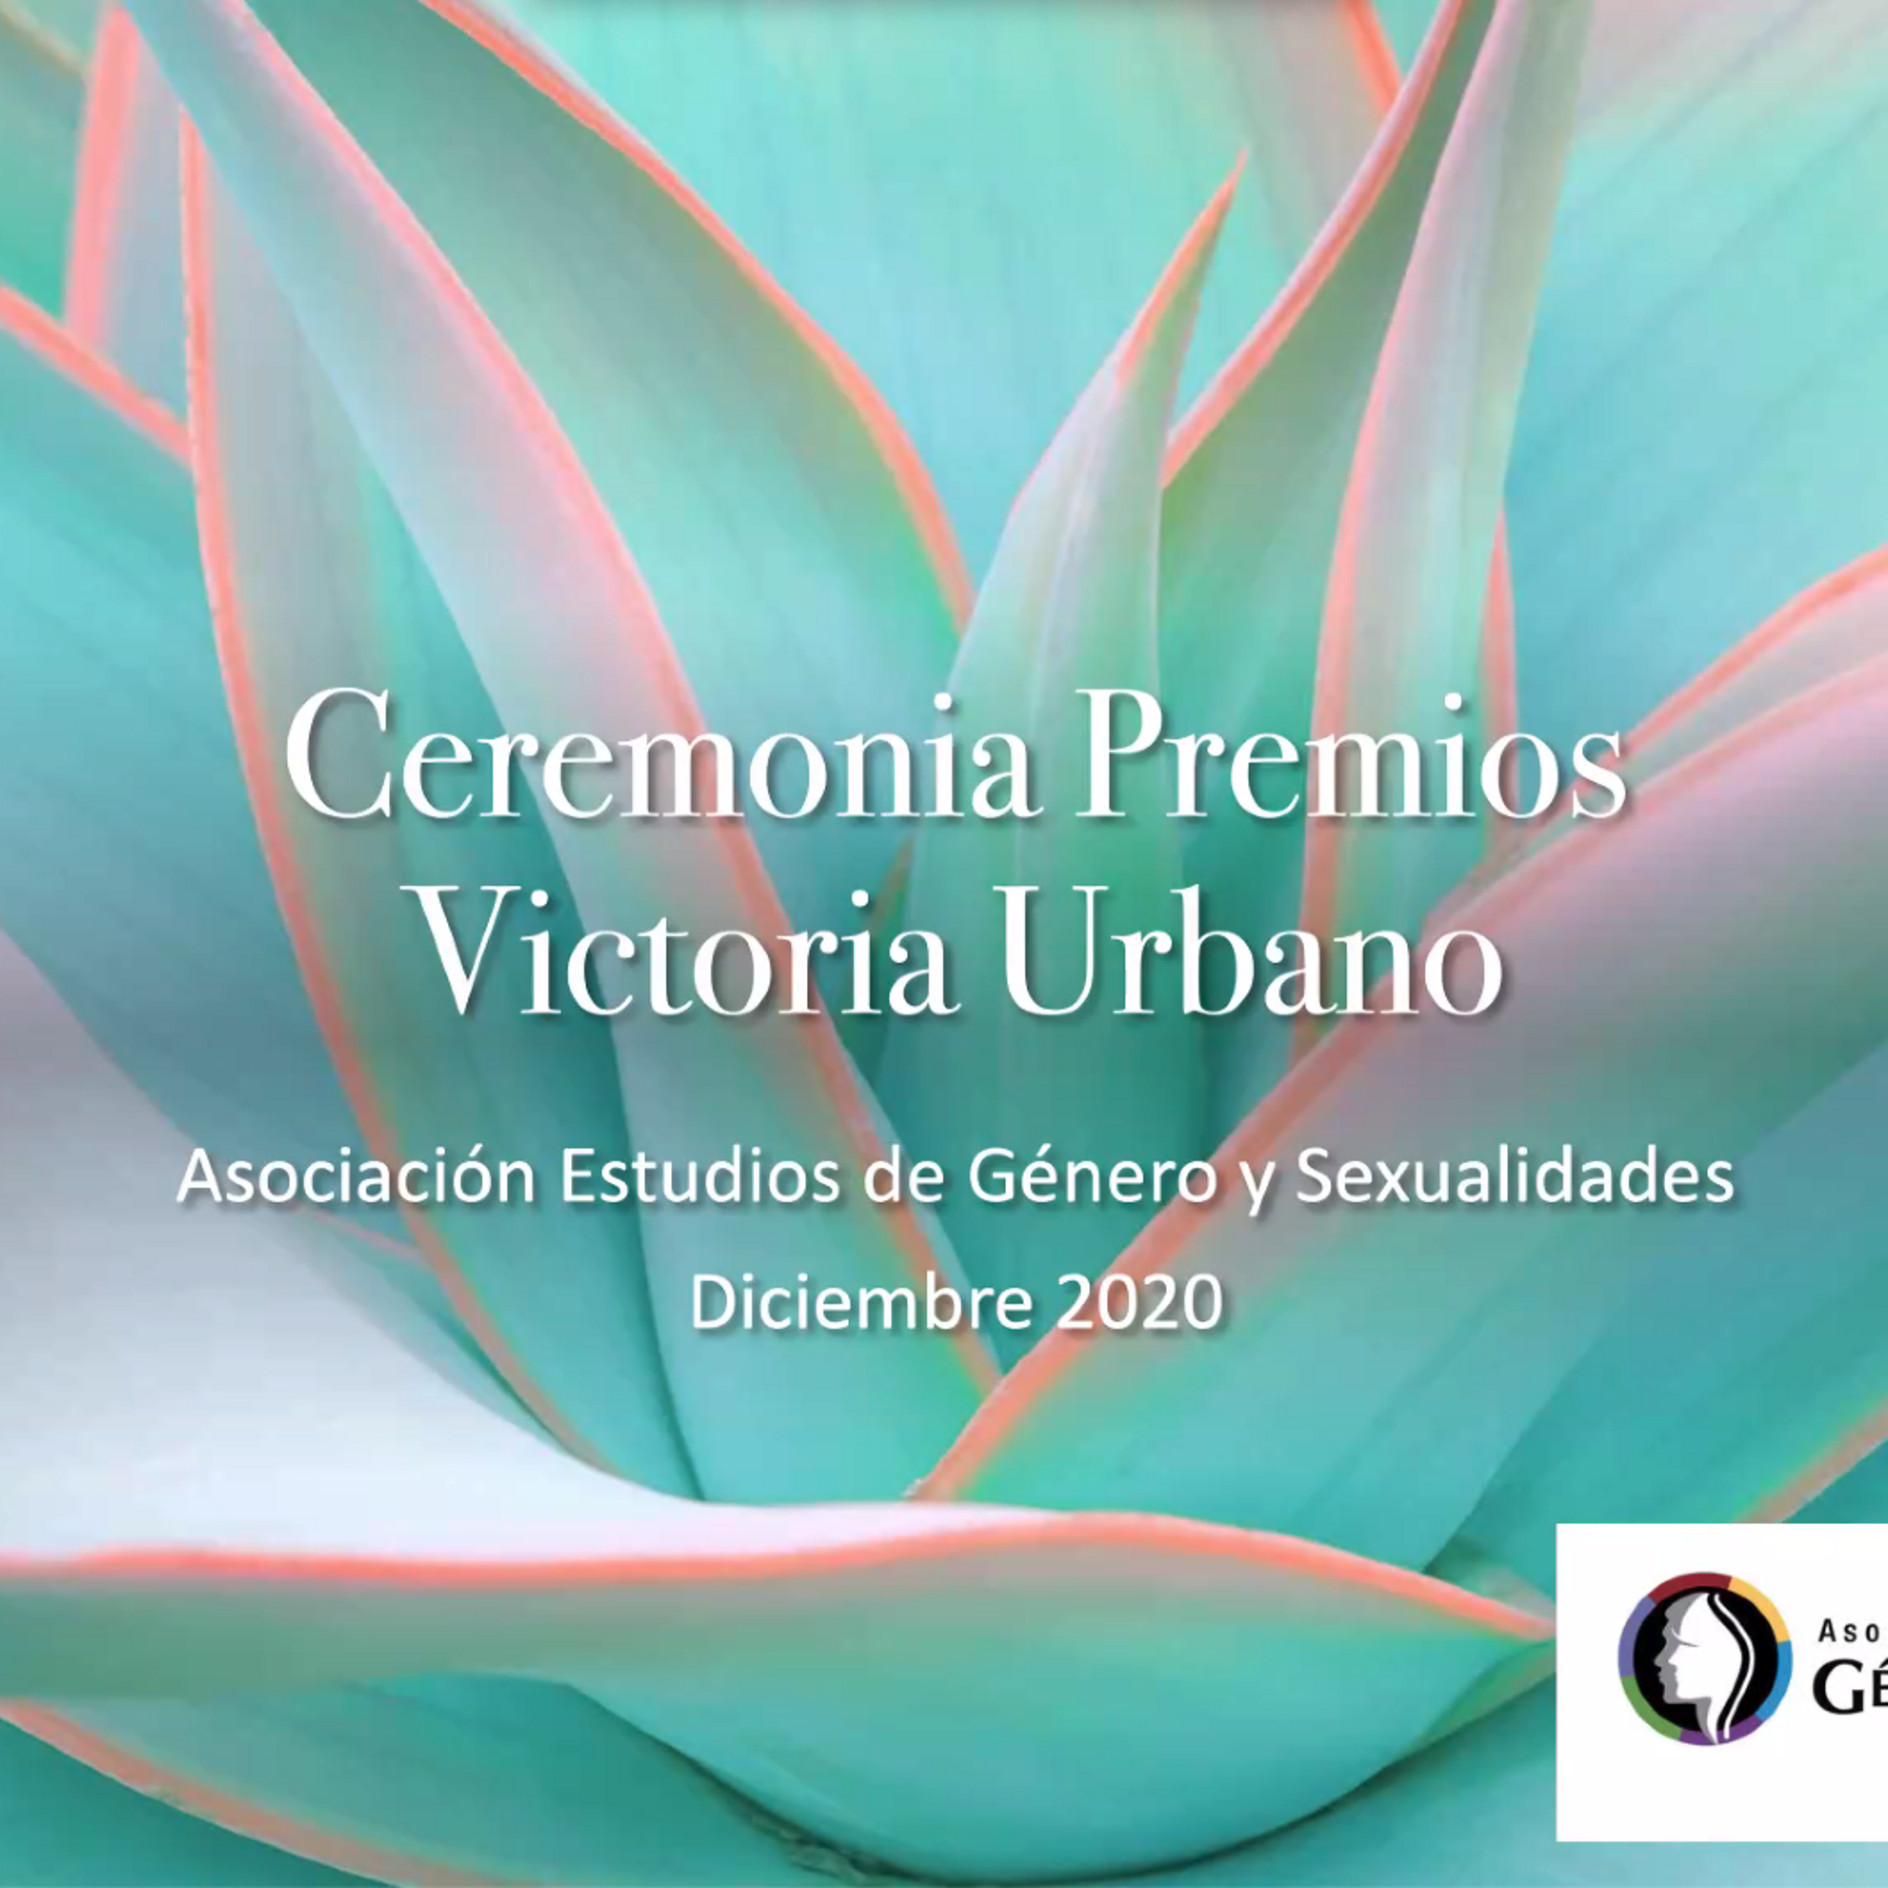 text: Ceremonia Premios Victoria Urbano, Asociación de Género y Sexualidades, Diciembre 2020